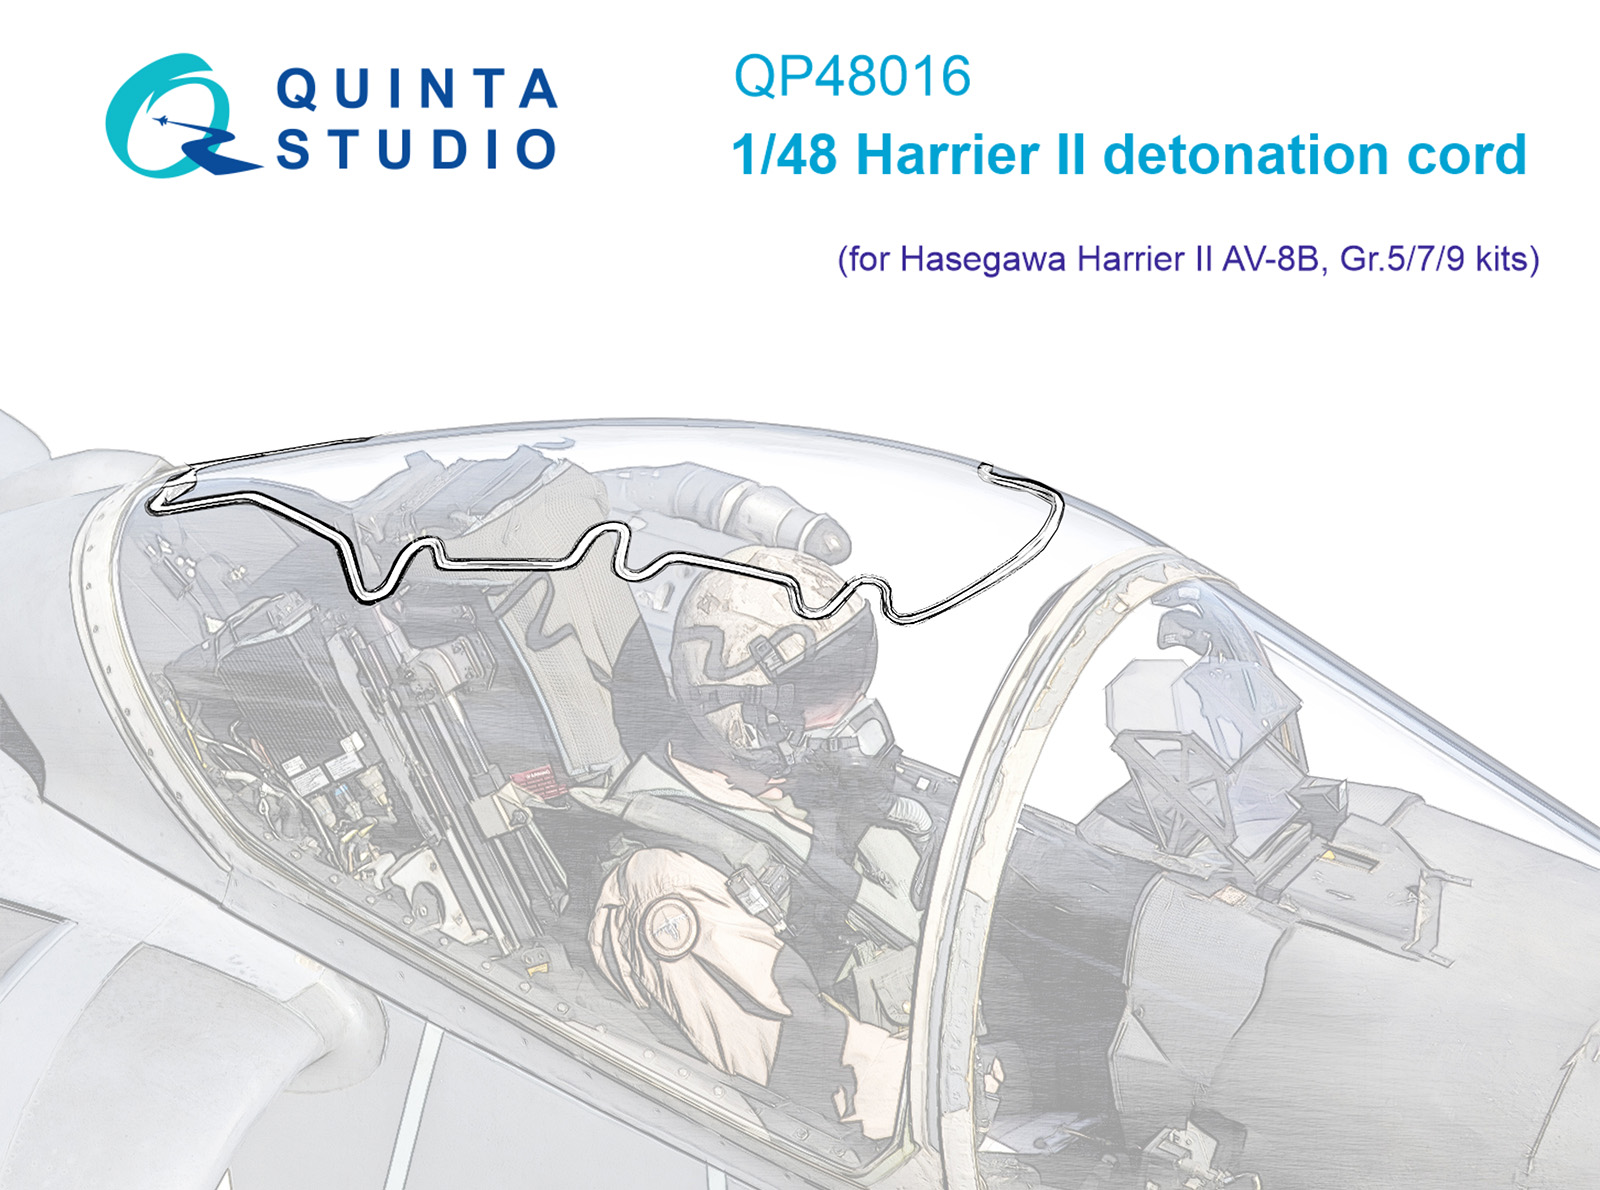 QP48016  декали  3D Декаль Пирошнур ждя остекления Harrier II  (Hasegawa)  (1:48)